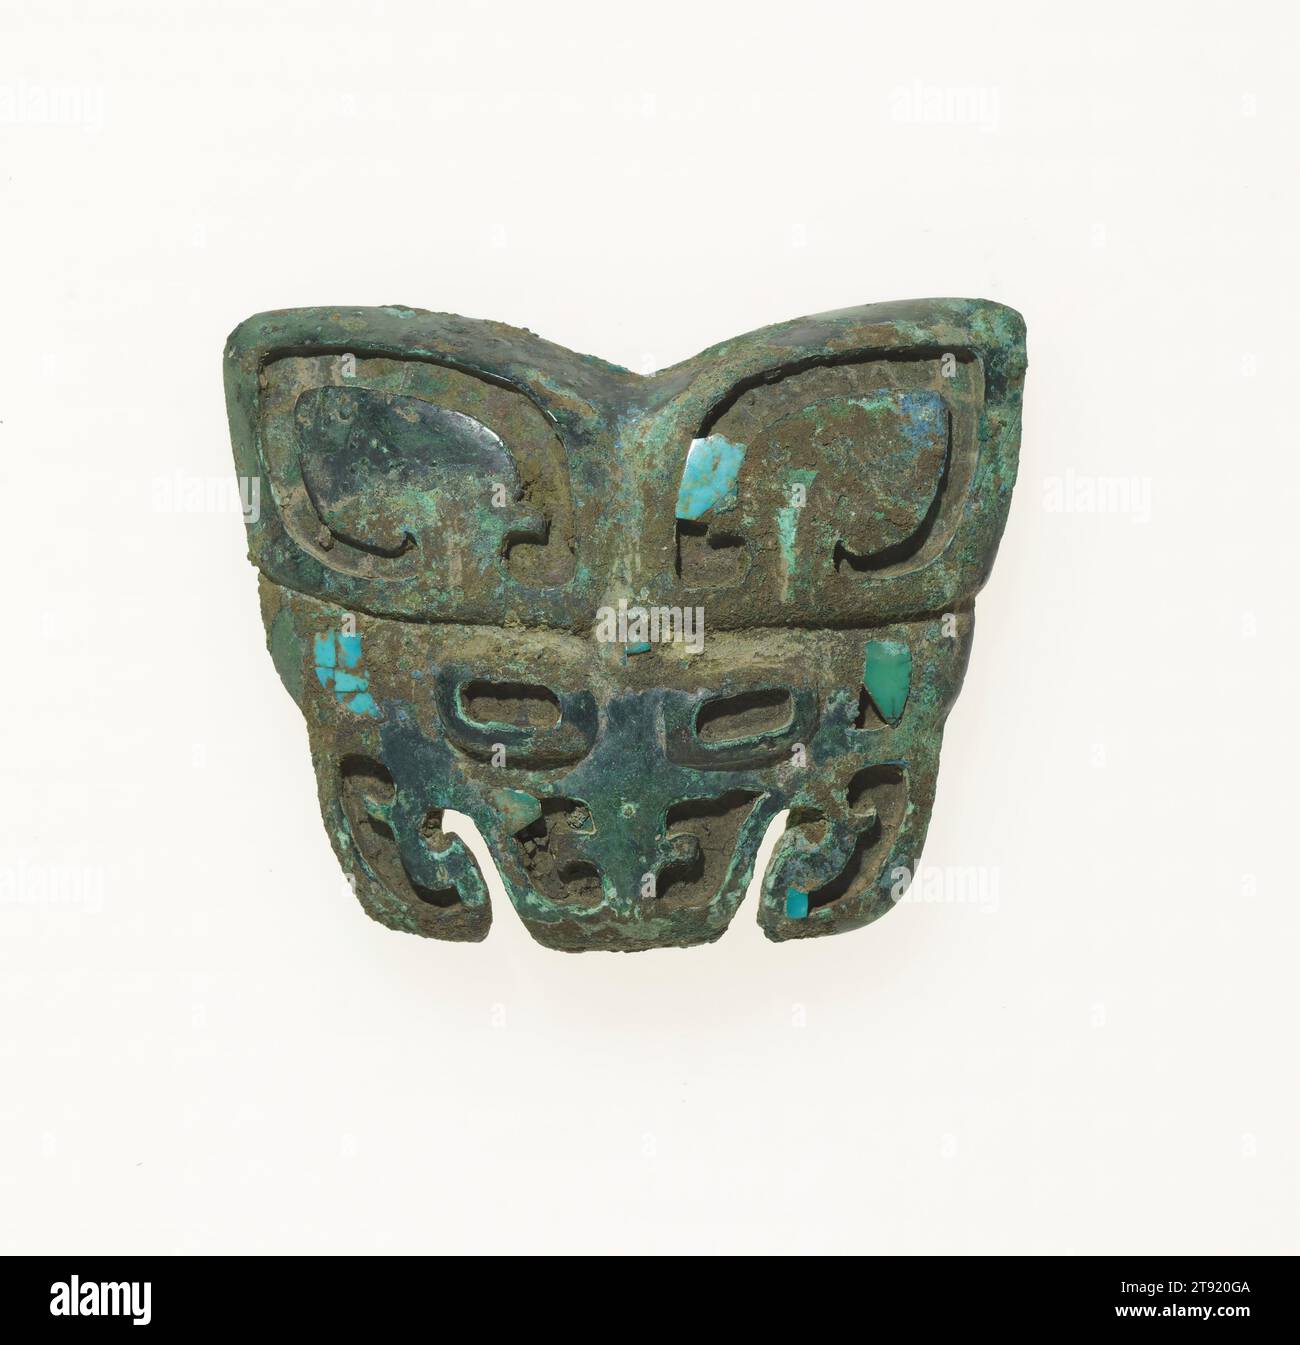 Appliqué en forme de masque taotie, 12e siècle avant notre ère, 2 3/8 × 3 po, 0,2 lb. (6,1 × 7,6 cm, 0,1 kg), Bronze incrusté de turquoise, Chine, 12e siècle avant notre ère Banque D'Images